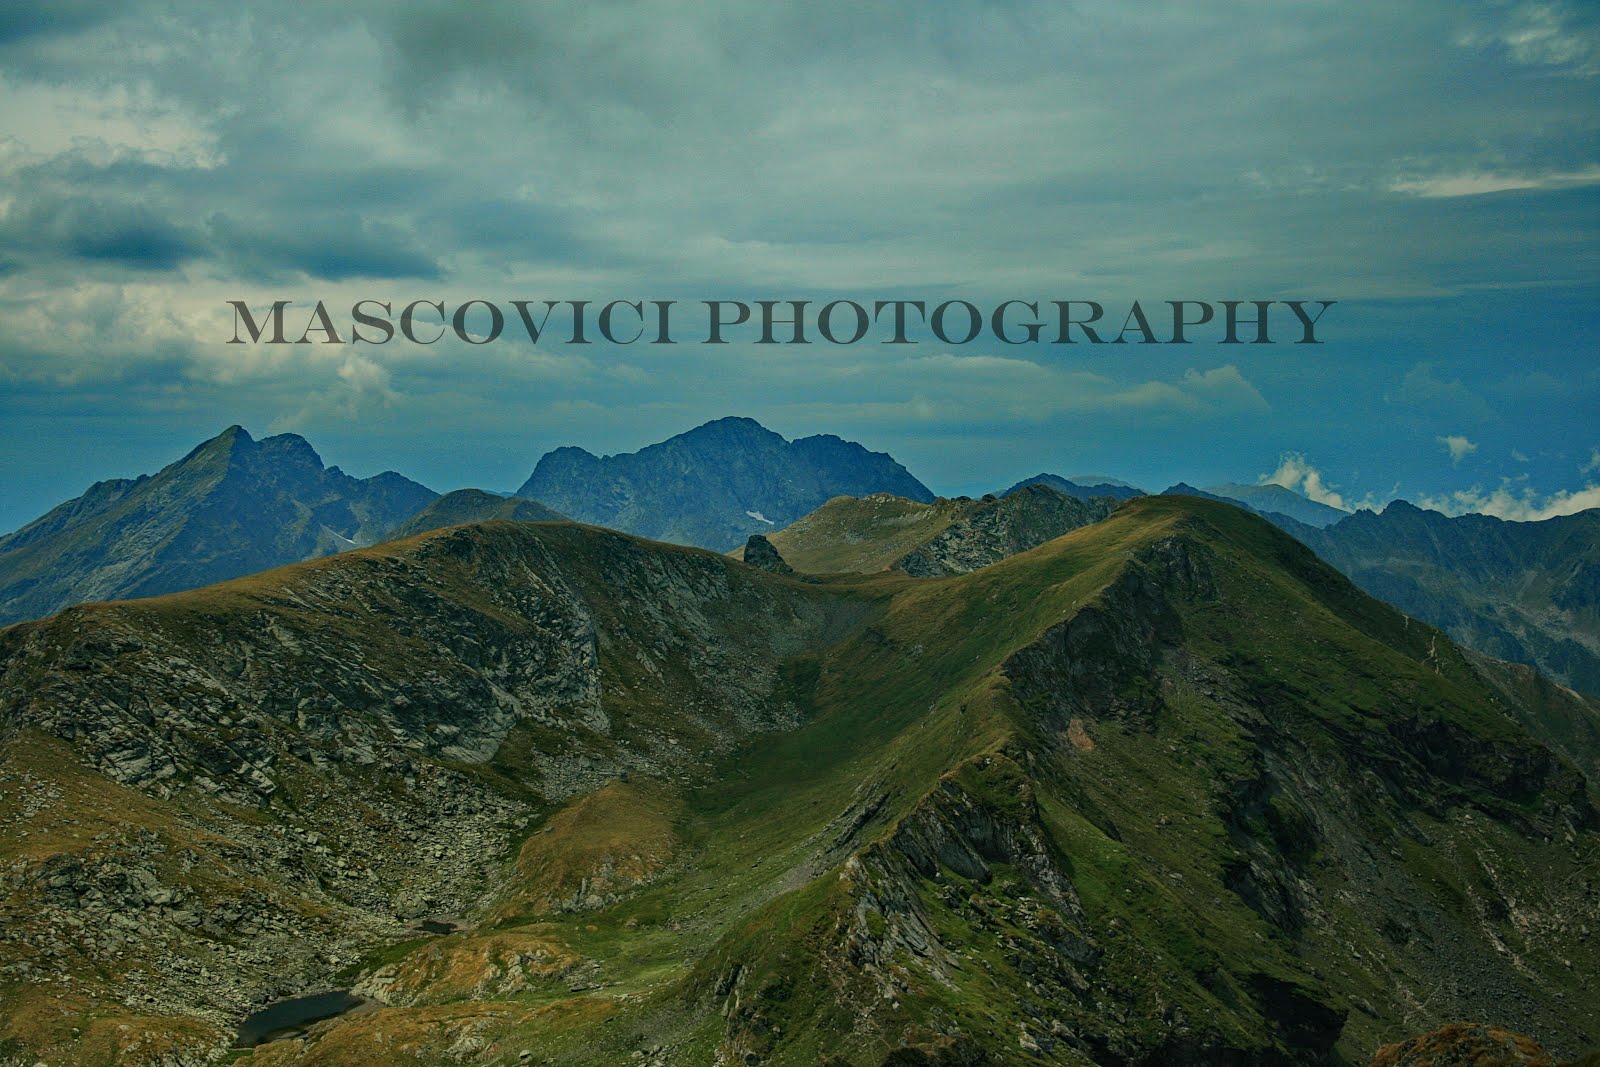 Mascovici Photography